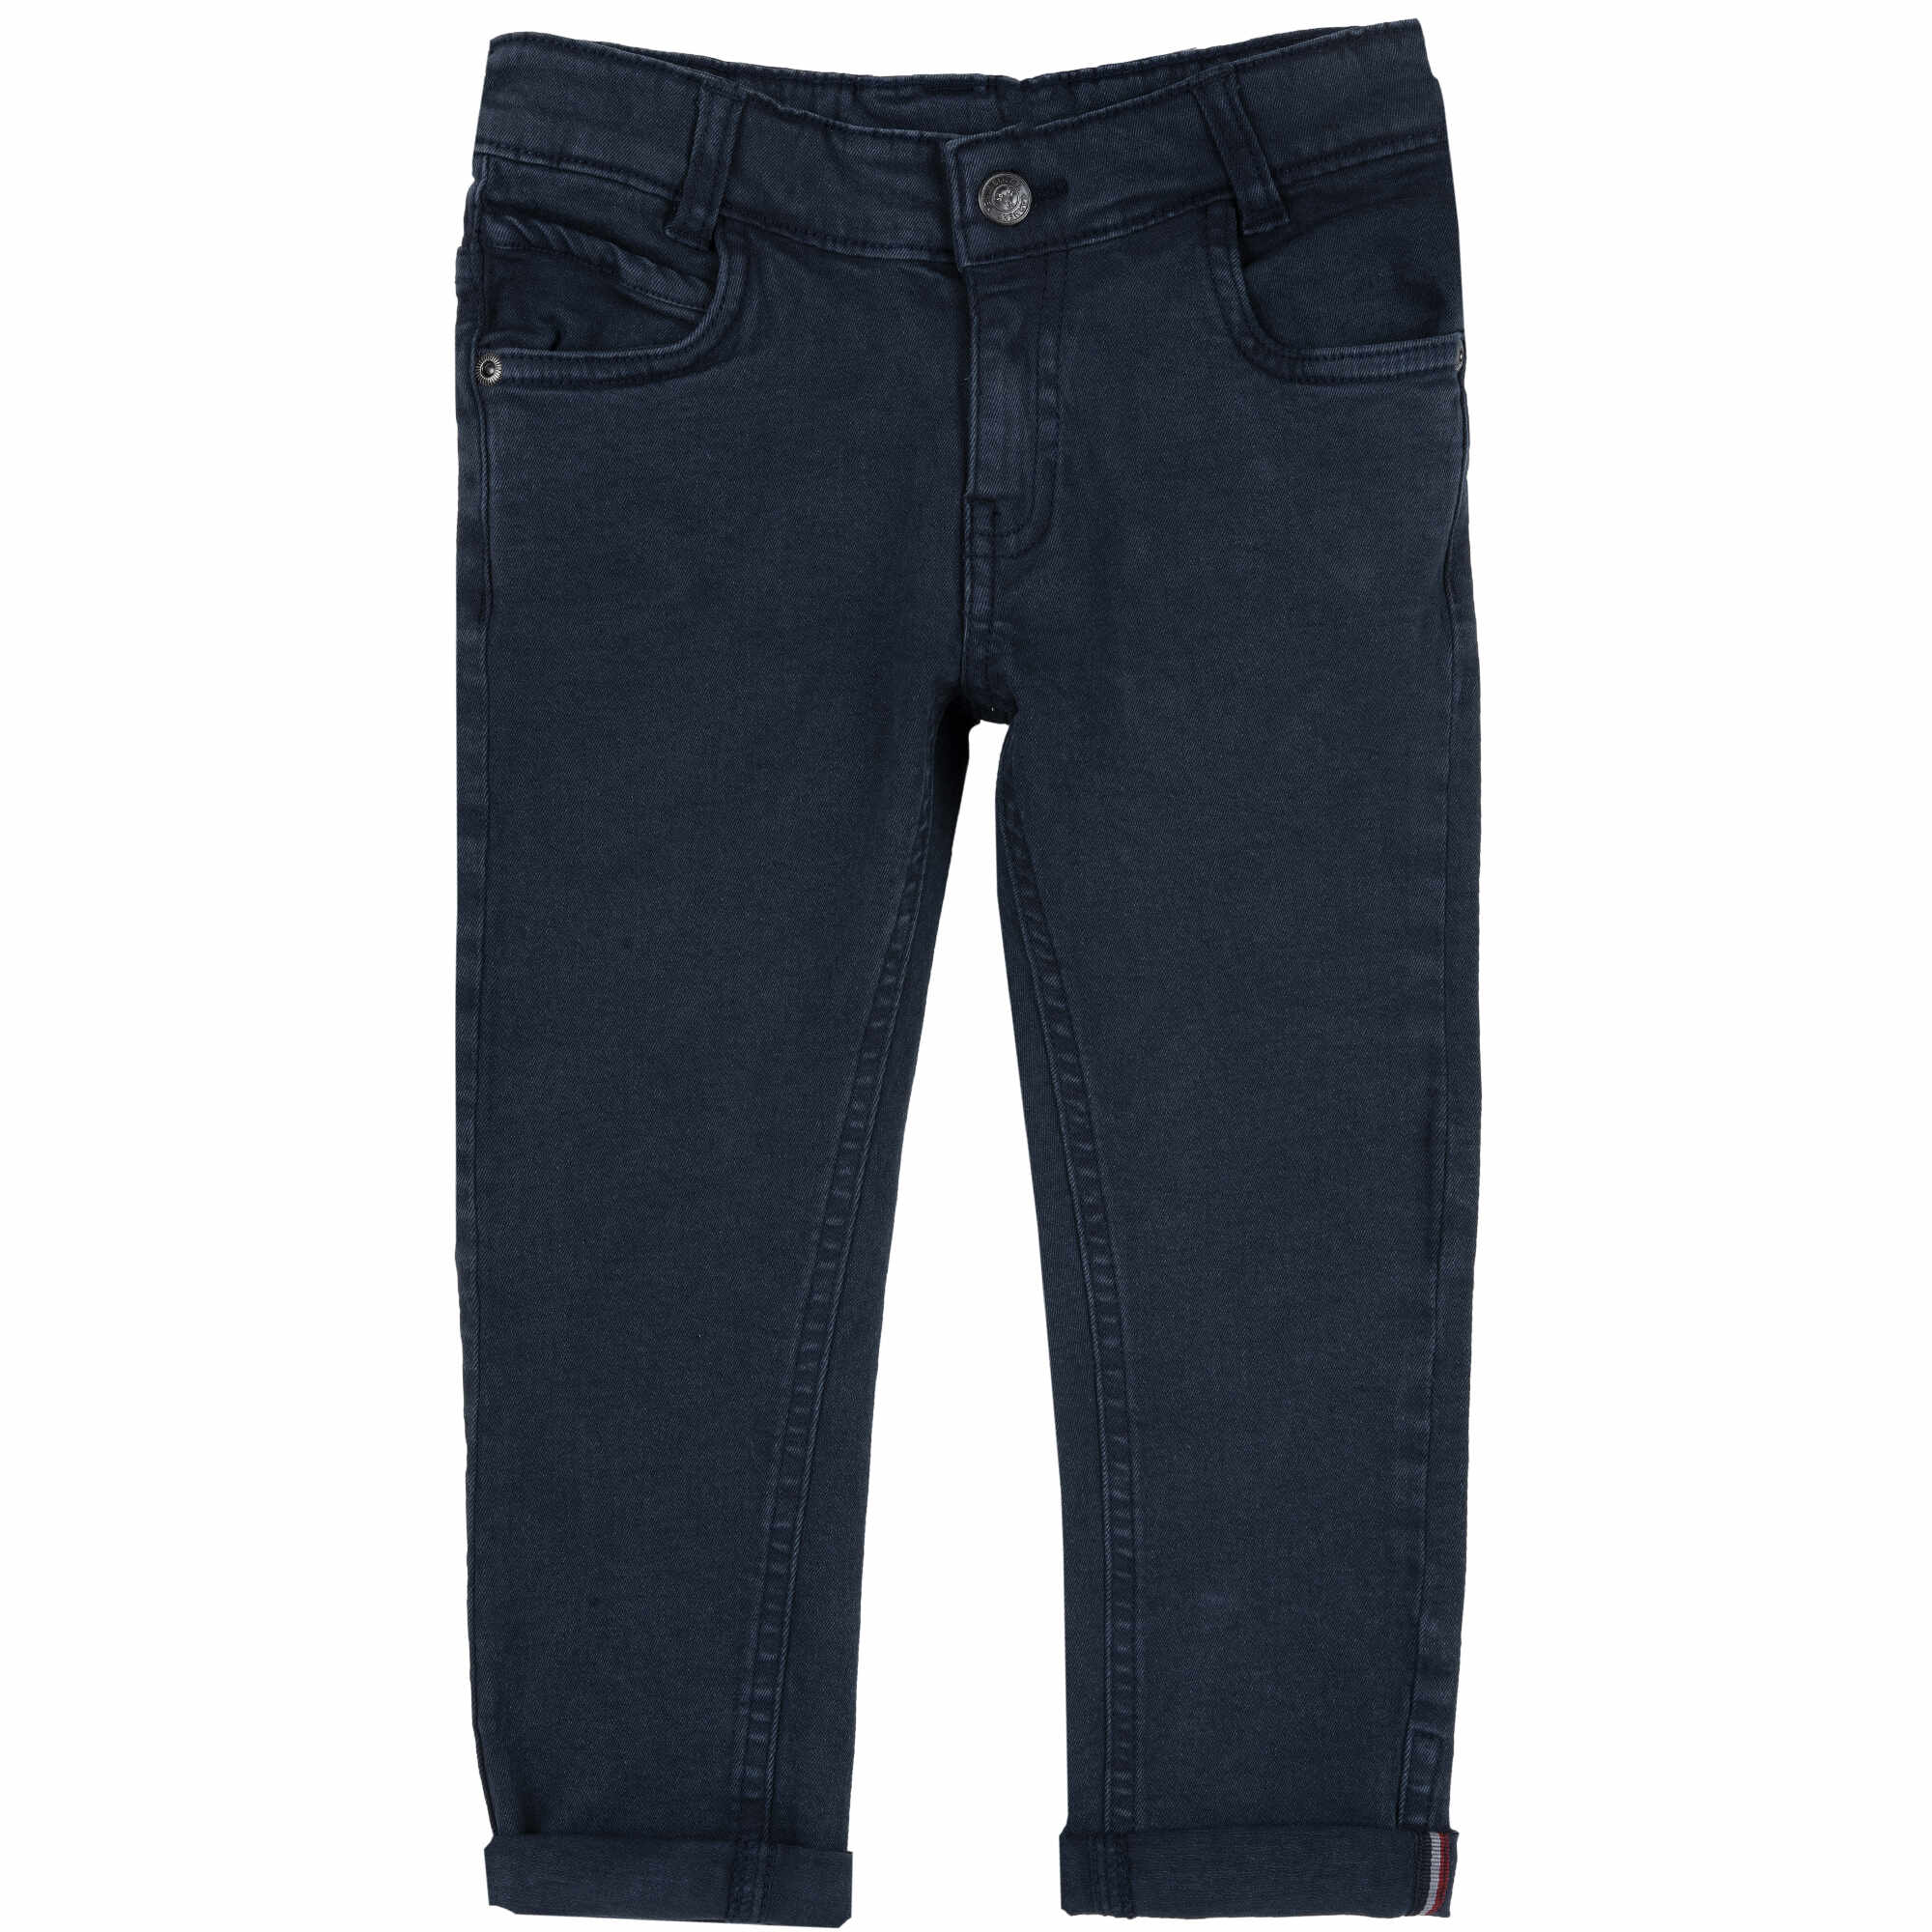 Pantaloni lungi copii Chicco, 08519-61MC, Albastru